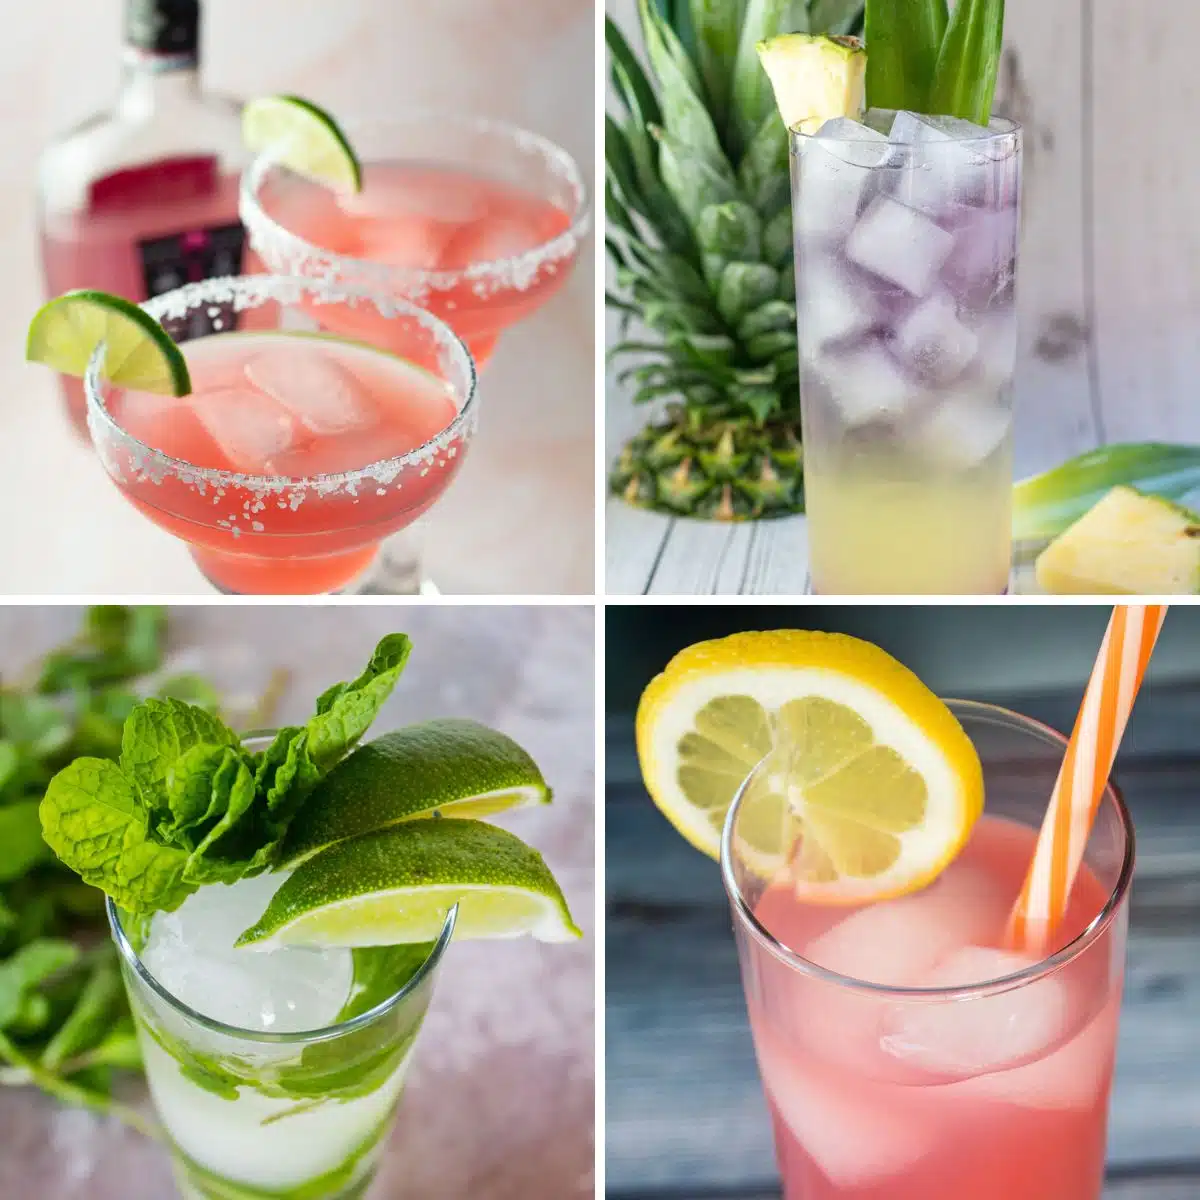 सर्वश्रेष्ठ वैलेंटाइन डे कॉकटेल कोलाज छवि जिसमें इस वर्ष बनाने के लिए चार स्वादिष्ट पेय शामिल हैं!